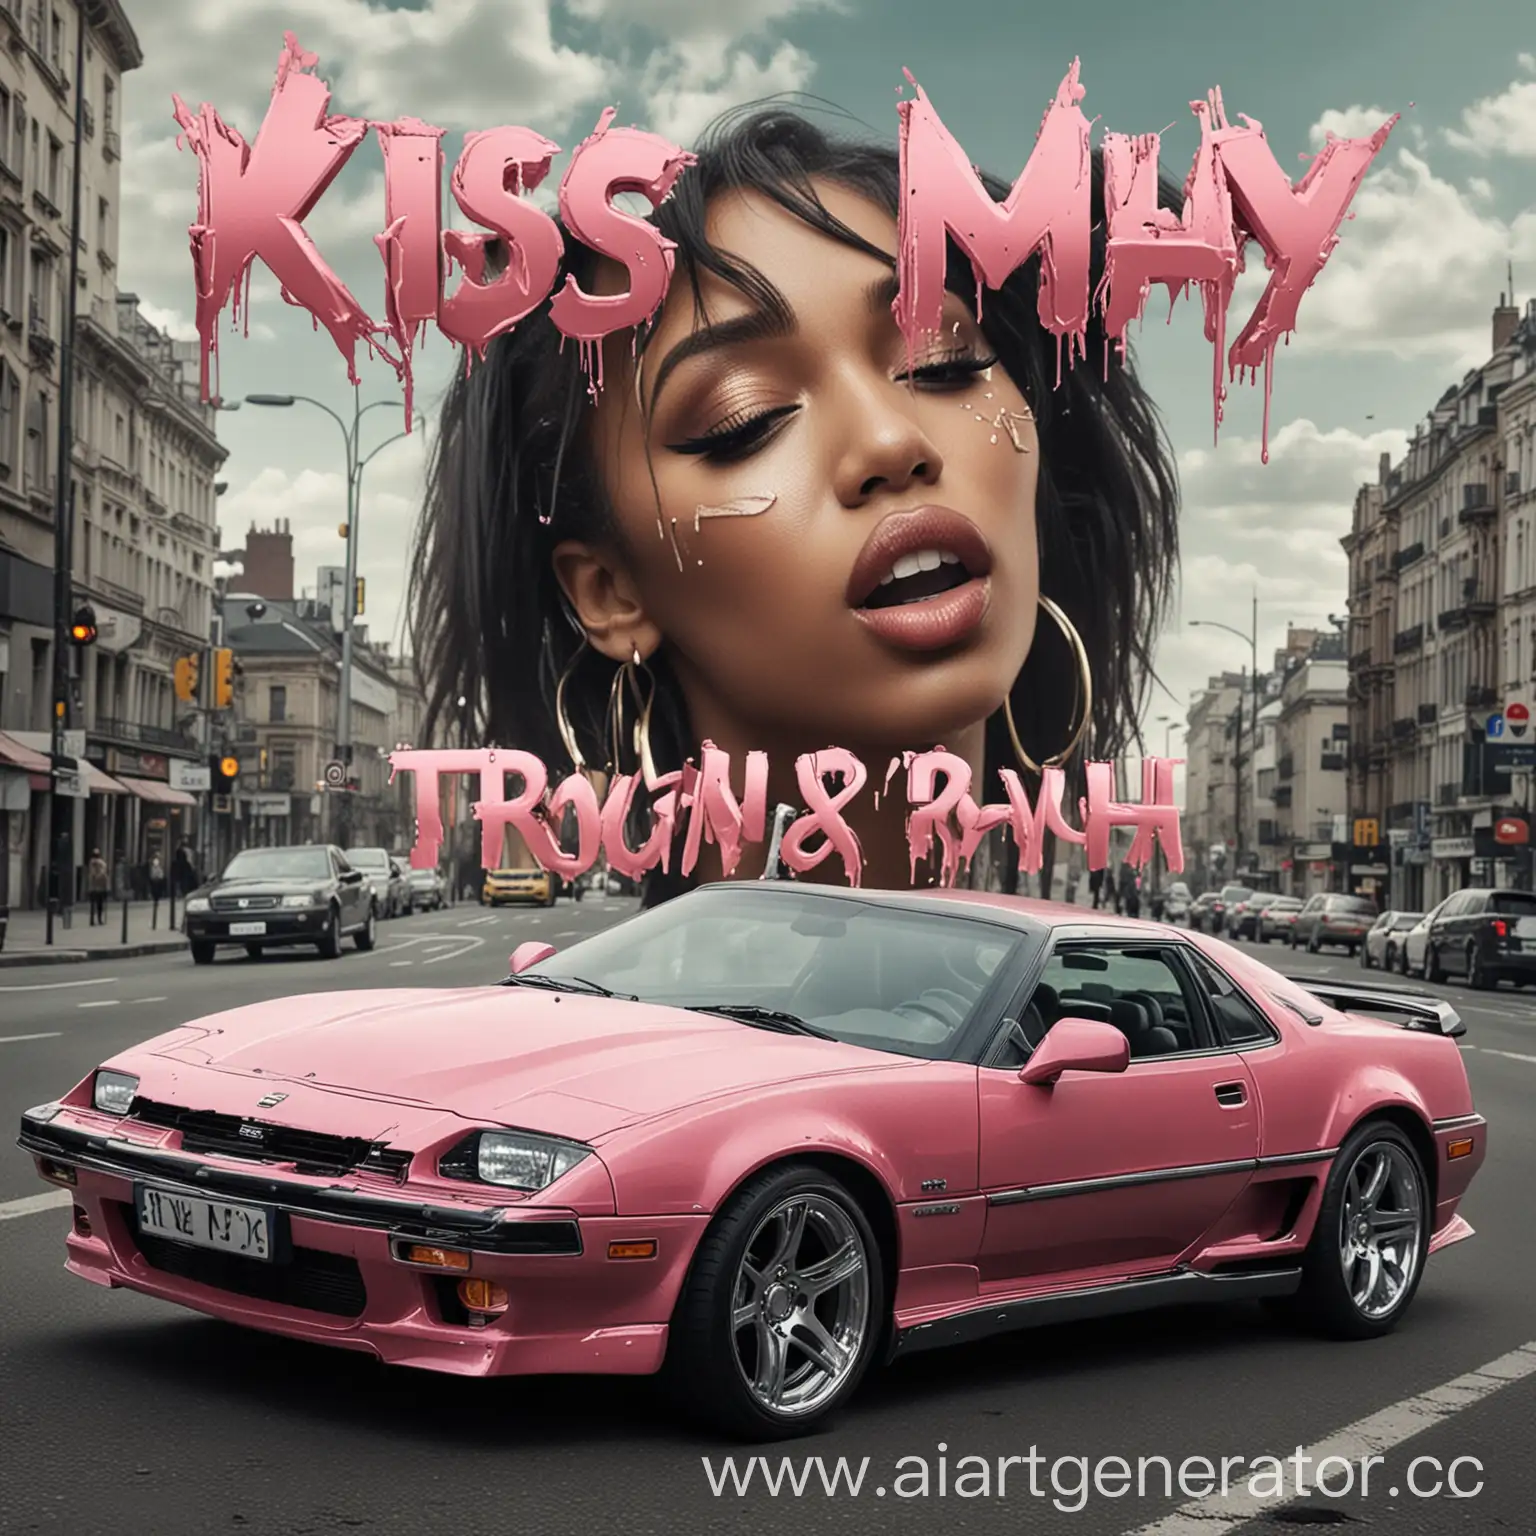 обложка для трека в стиле хип-хоп, на переднем фоне будет большая надпись -"KISS MY DAY" изорванным шрифтом, на заднем фоне будут дорогие машины и девушки